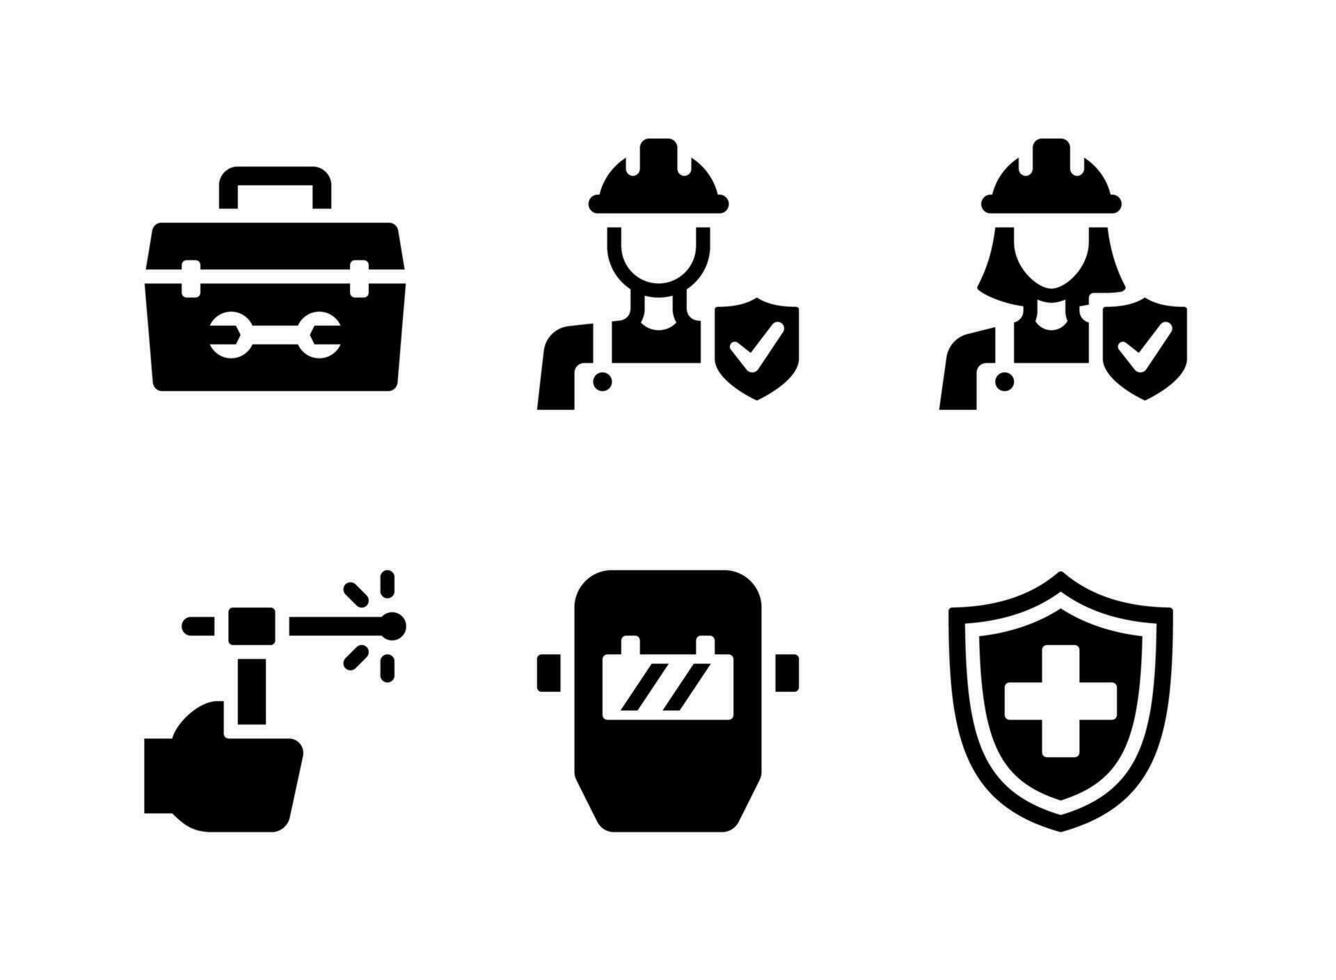 semplice set di icone solide vettoriali relative alla fabbrica. contiene icone come cassetta degli attrezzi, assicurazione del lavoratore, saldatura e altro.